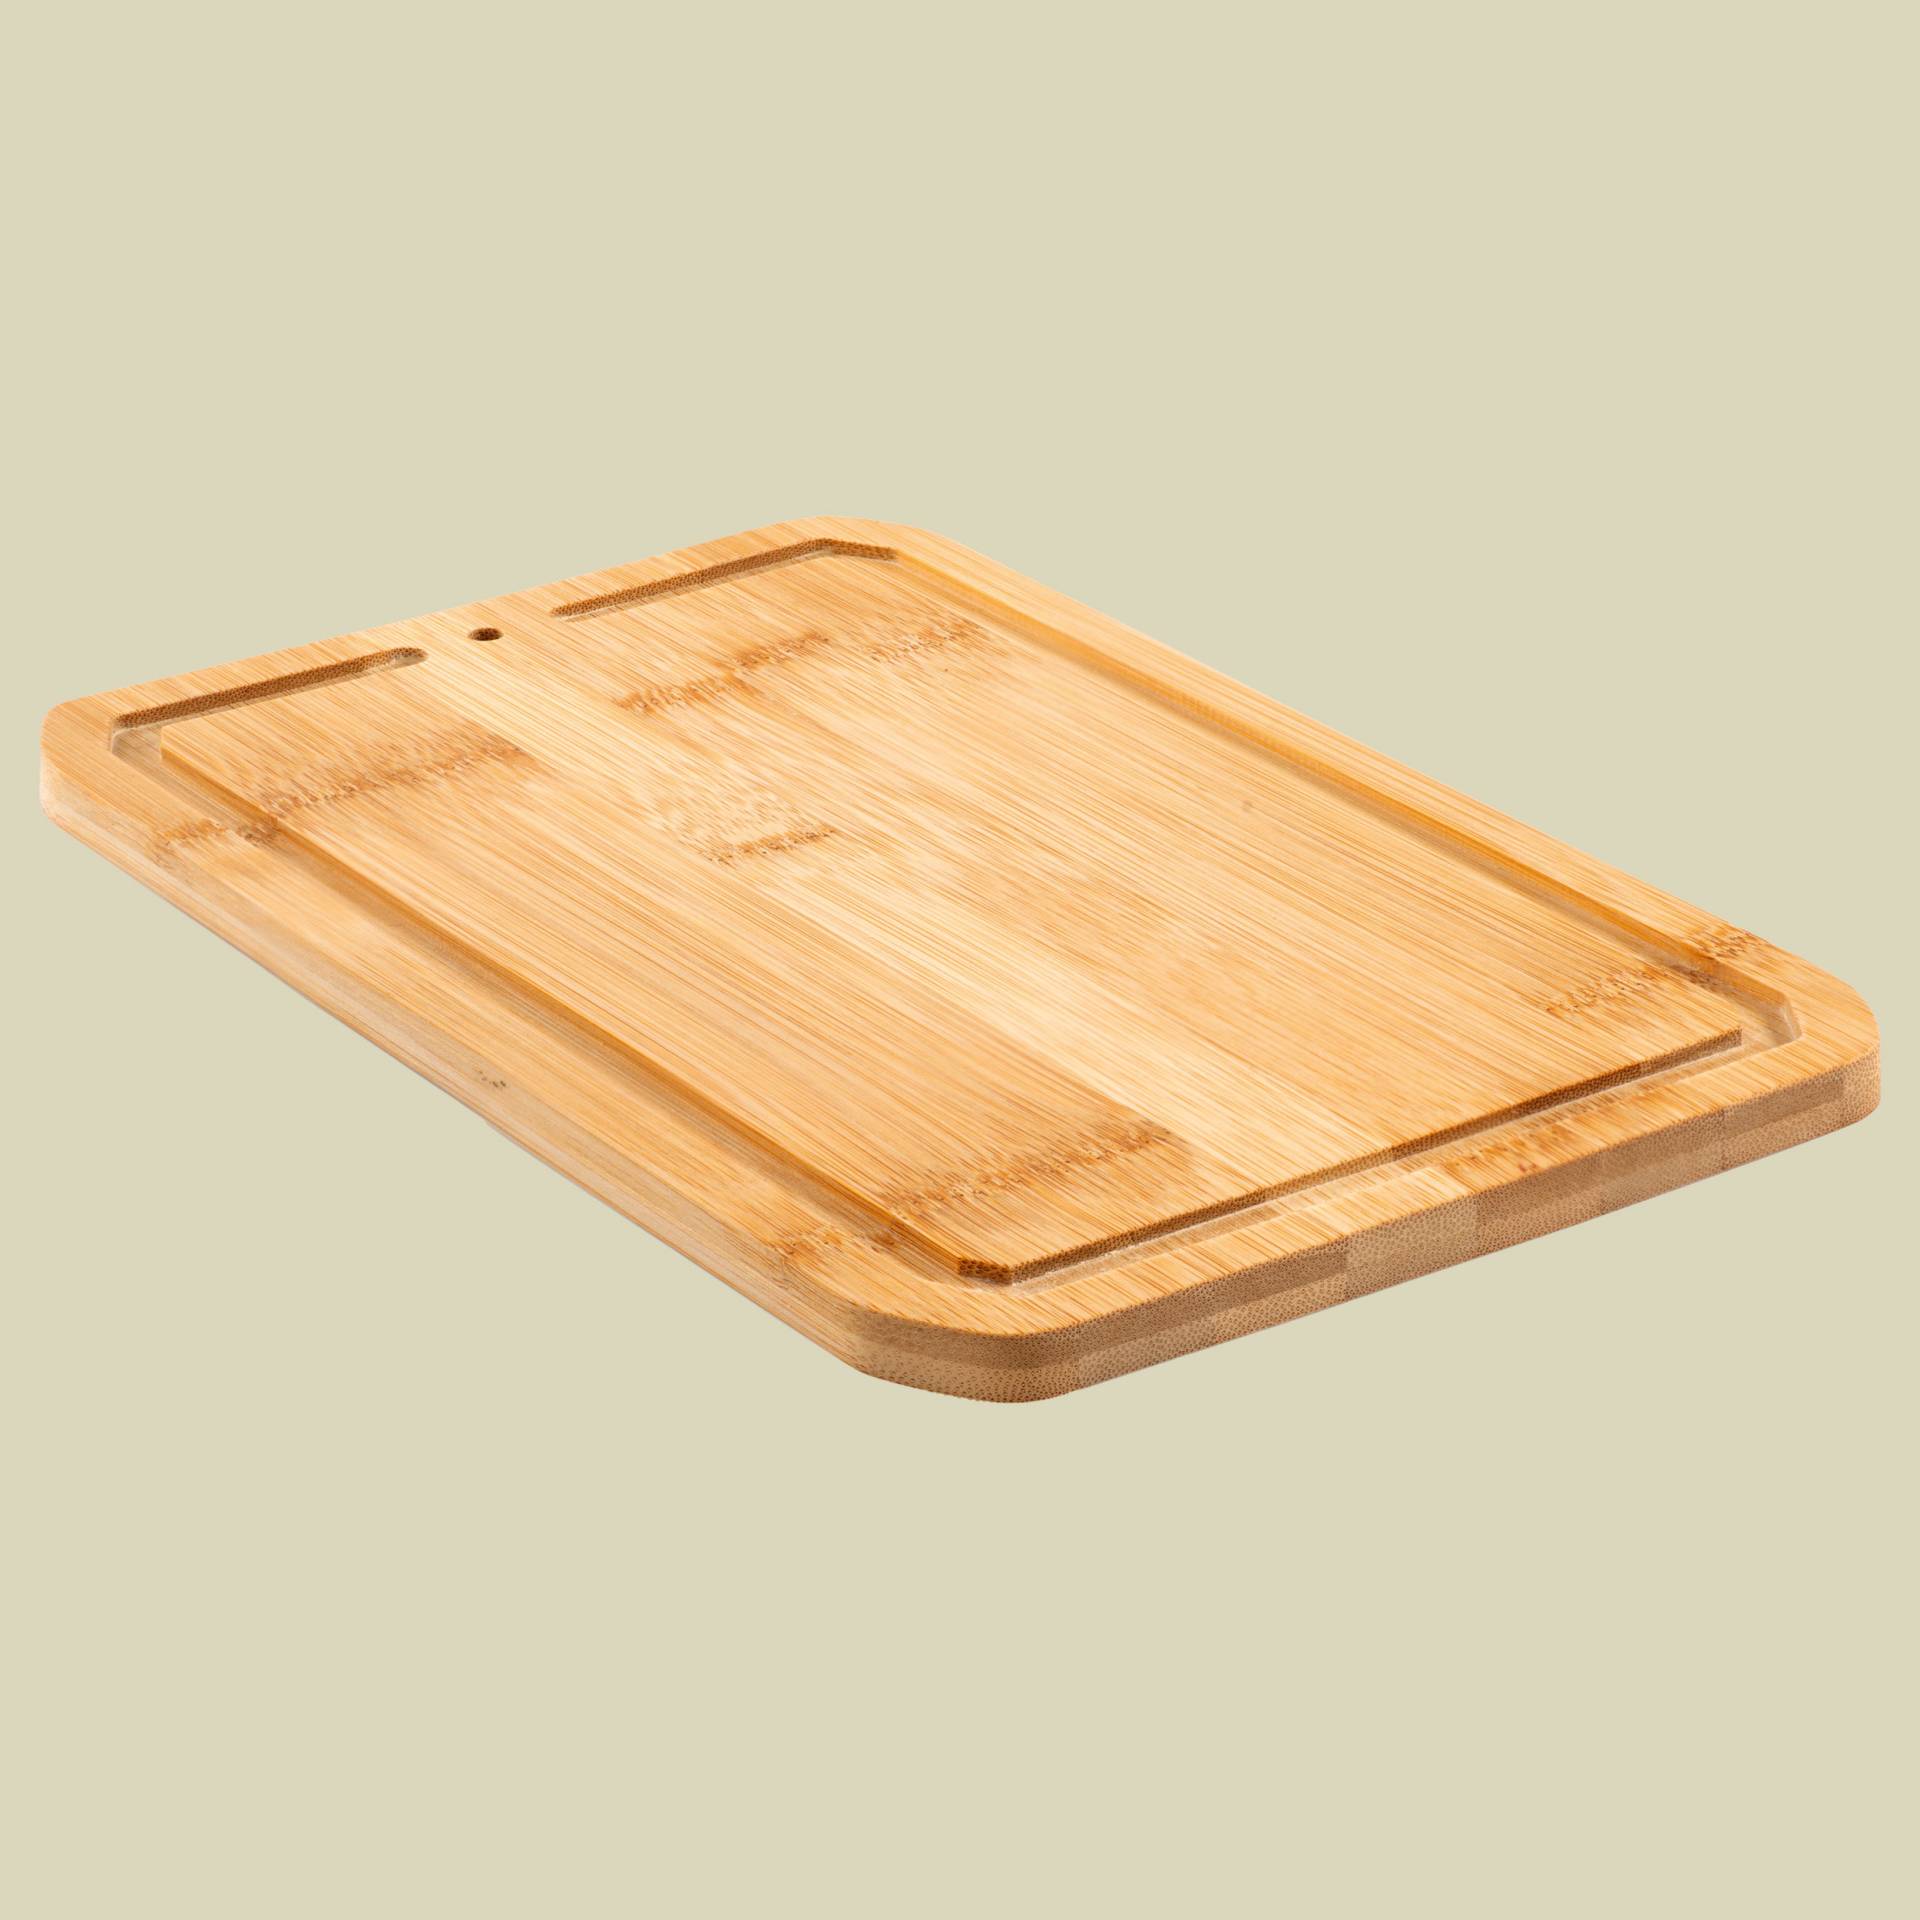 RAKAU Cutting Board Small Maße 26,8 x 17 x 1 cm von GSI Outdoors